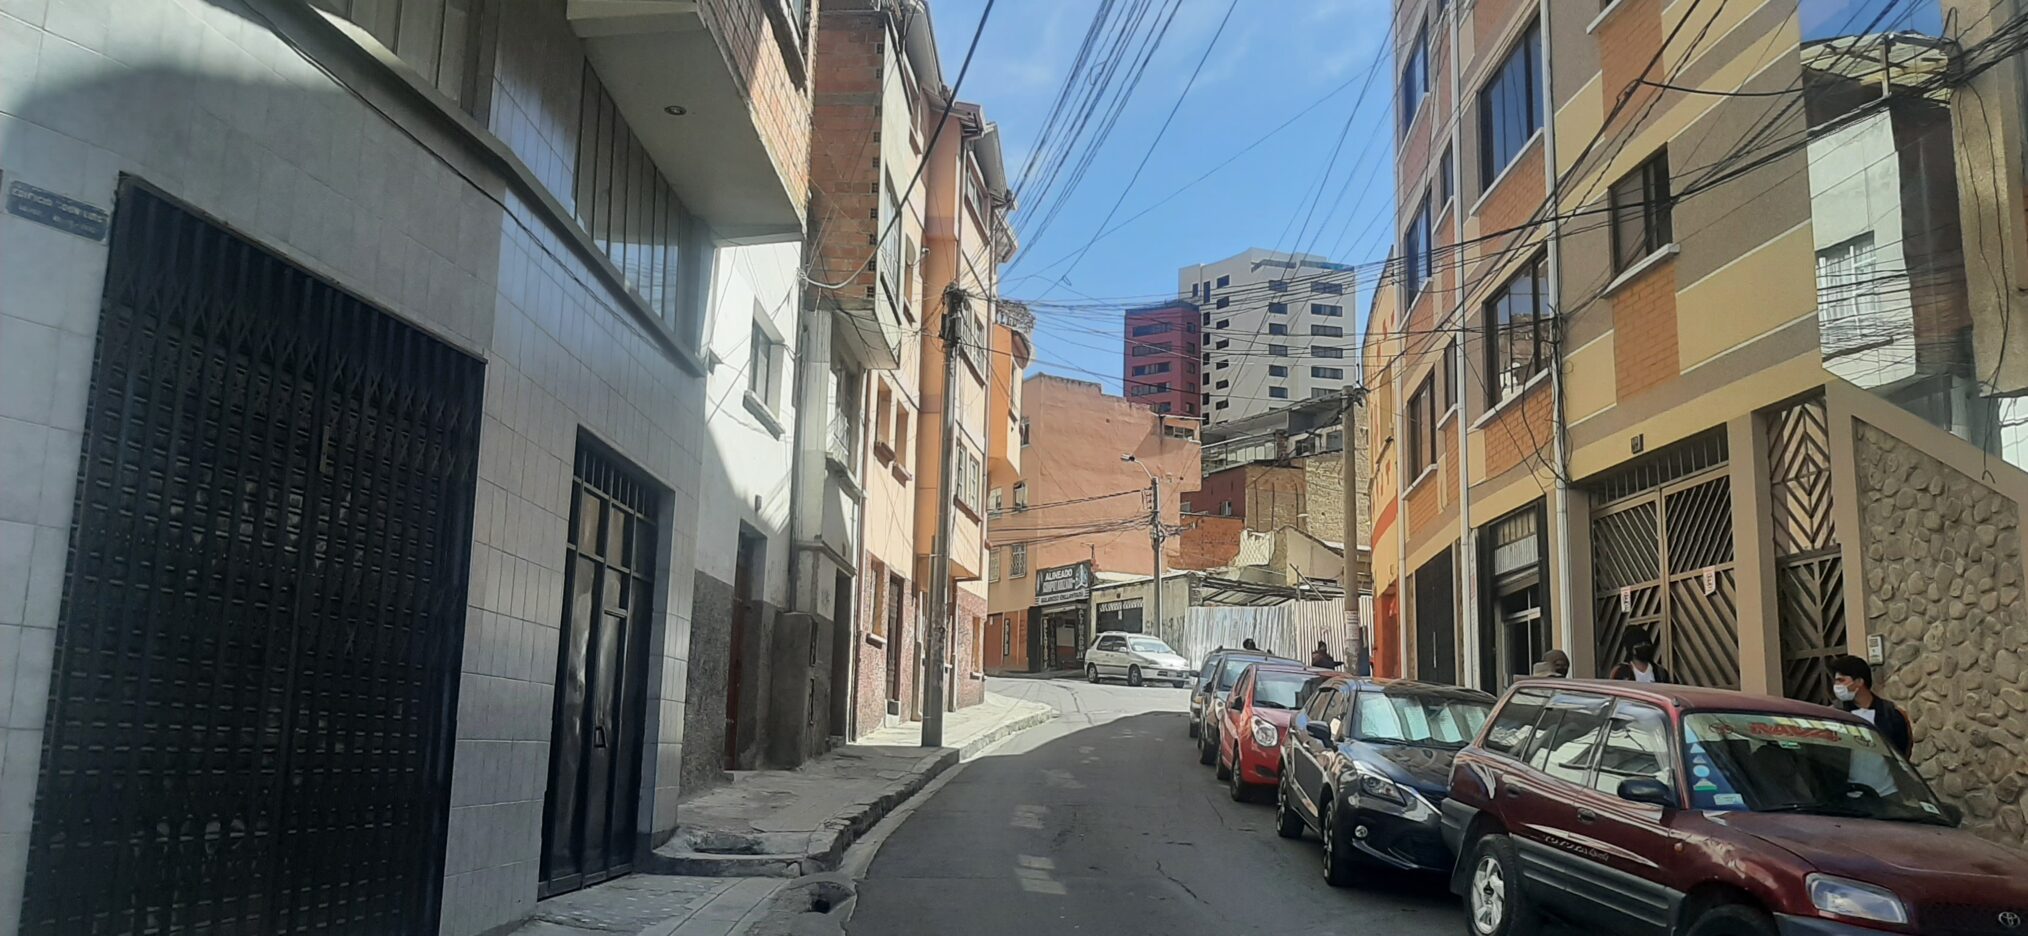 Una calle promedio de casas y residencial de San Pedro